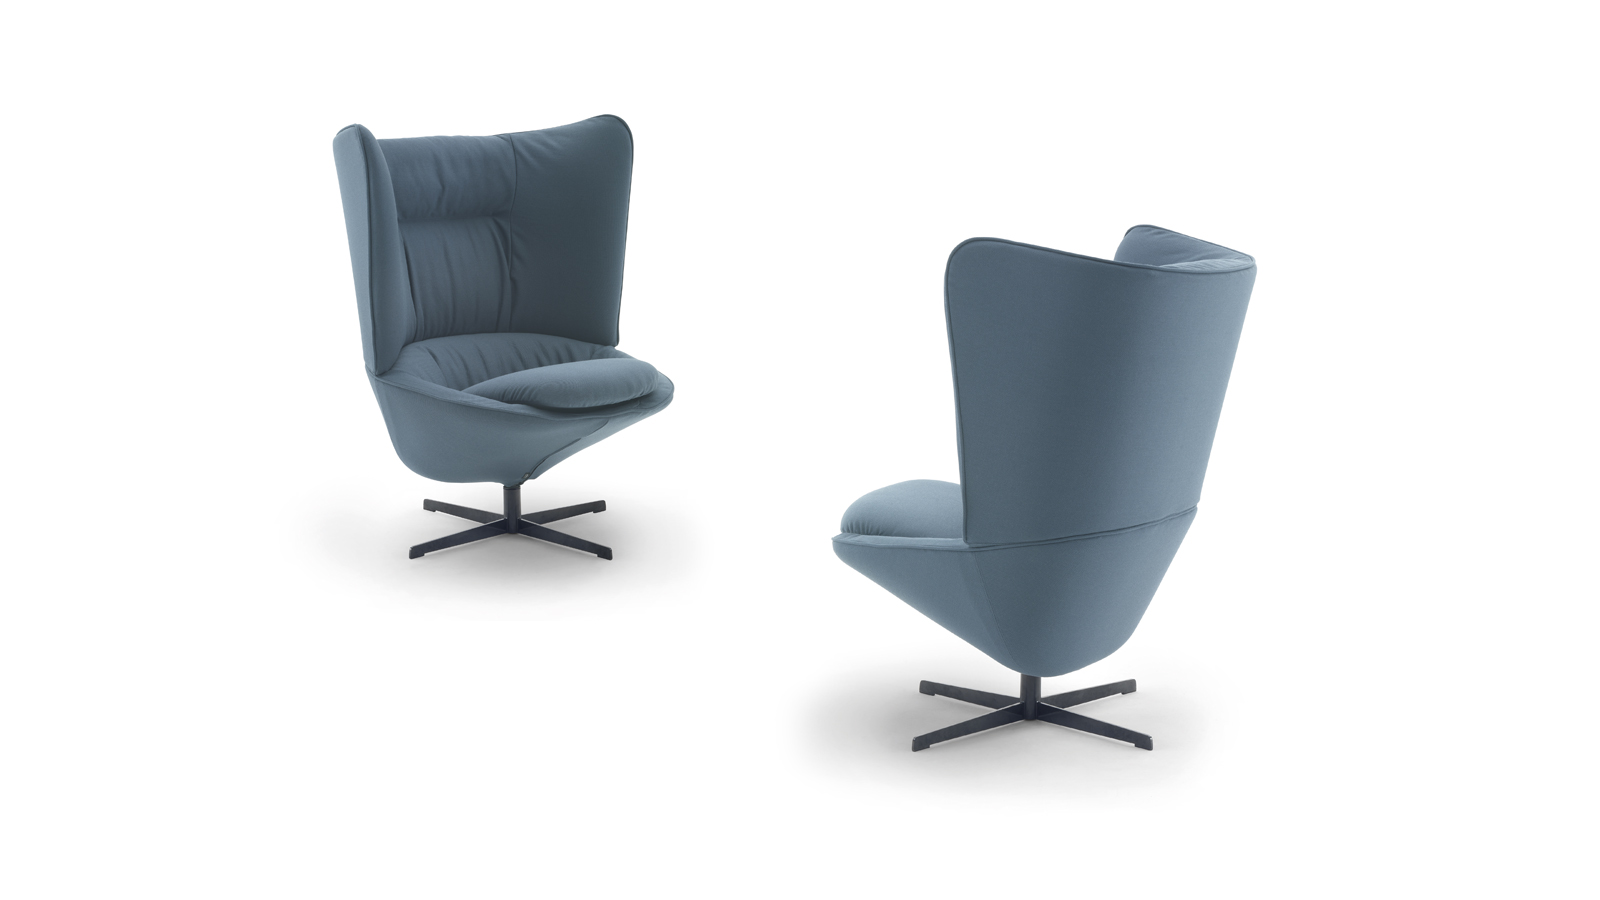 arflex – Ladle armchair, pouf design Luca Nichetto. | Arflex